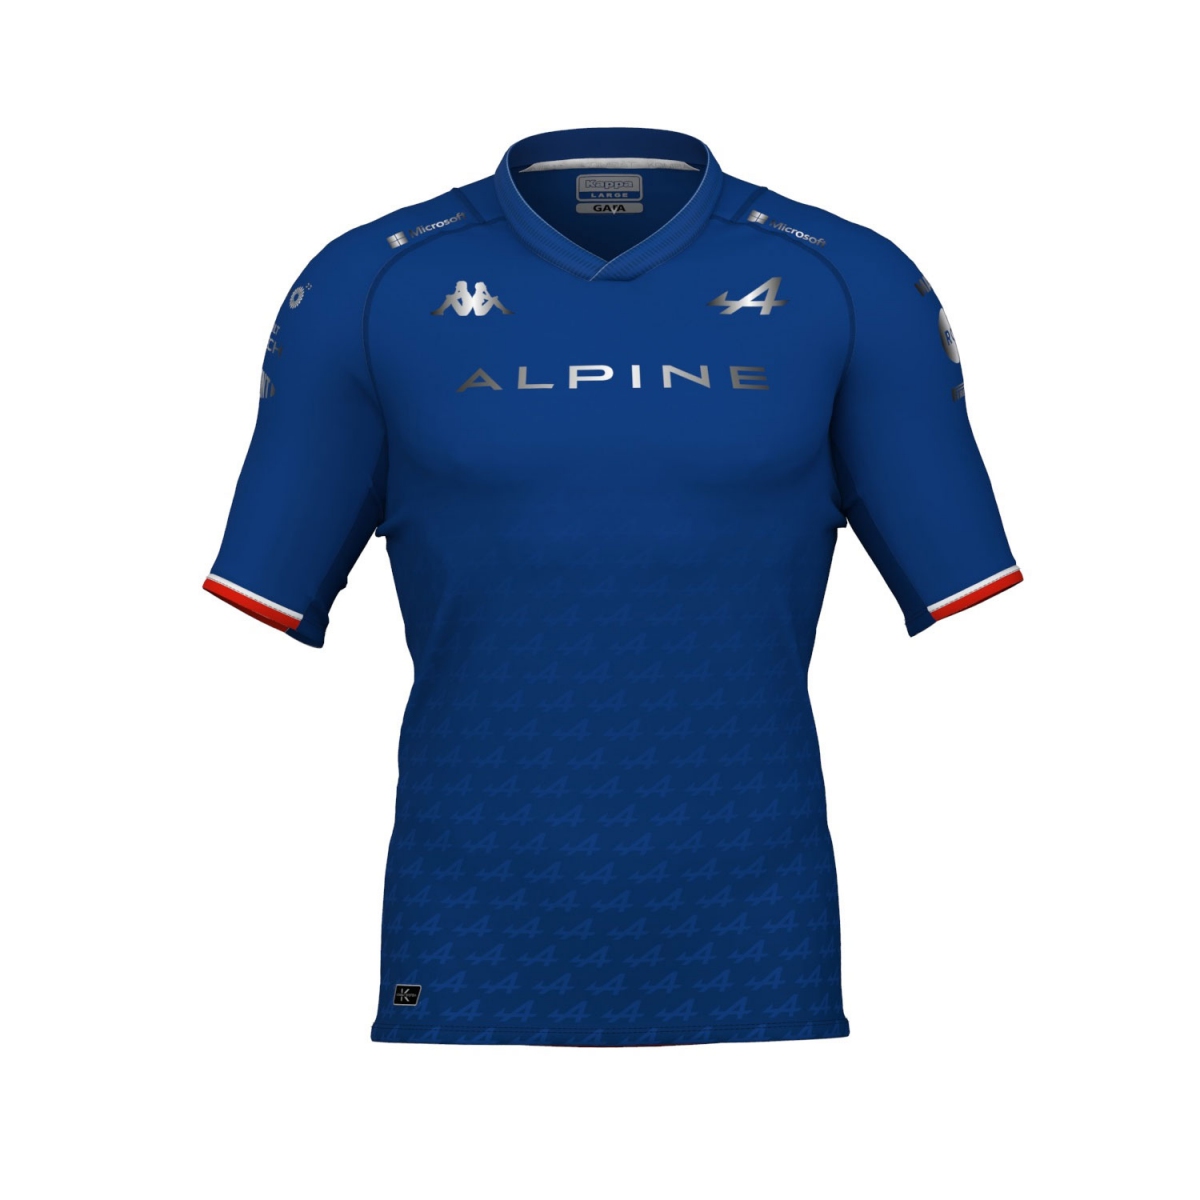 Alpine F1 pánské tričko fernando alonso team